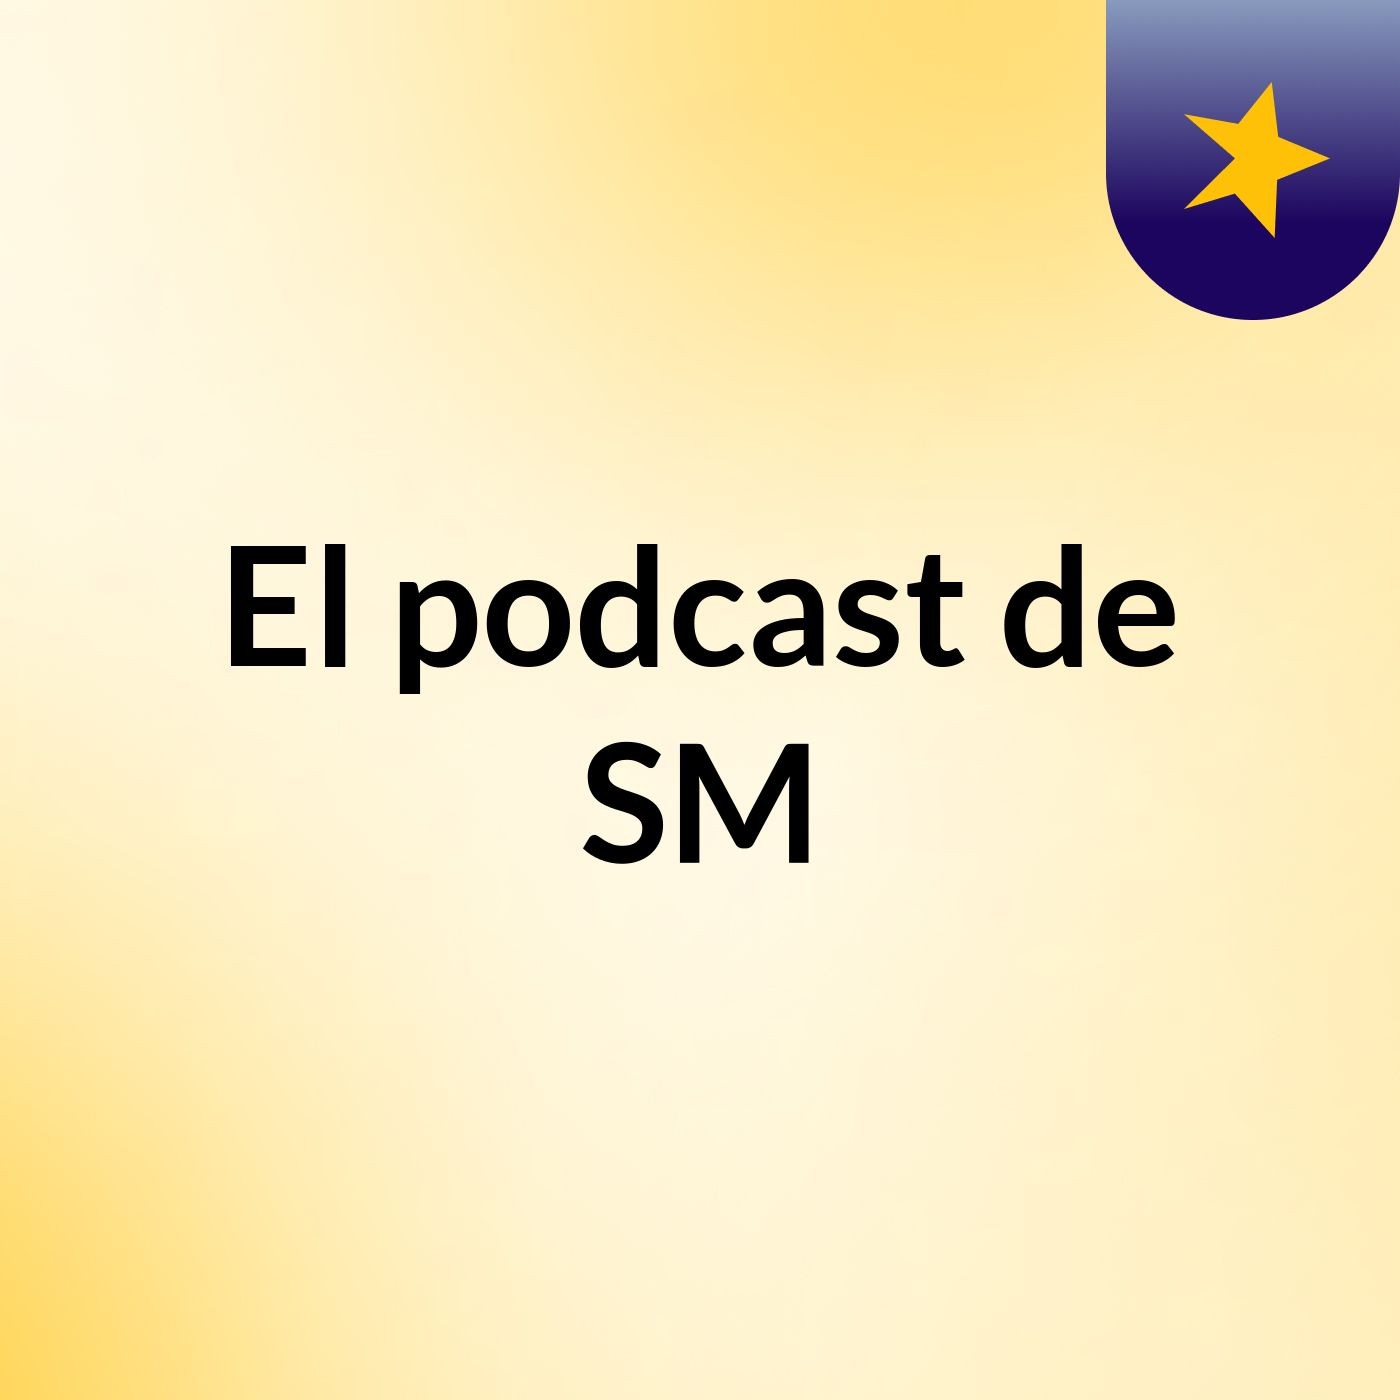 El podcast de SM